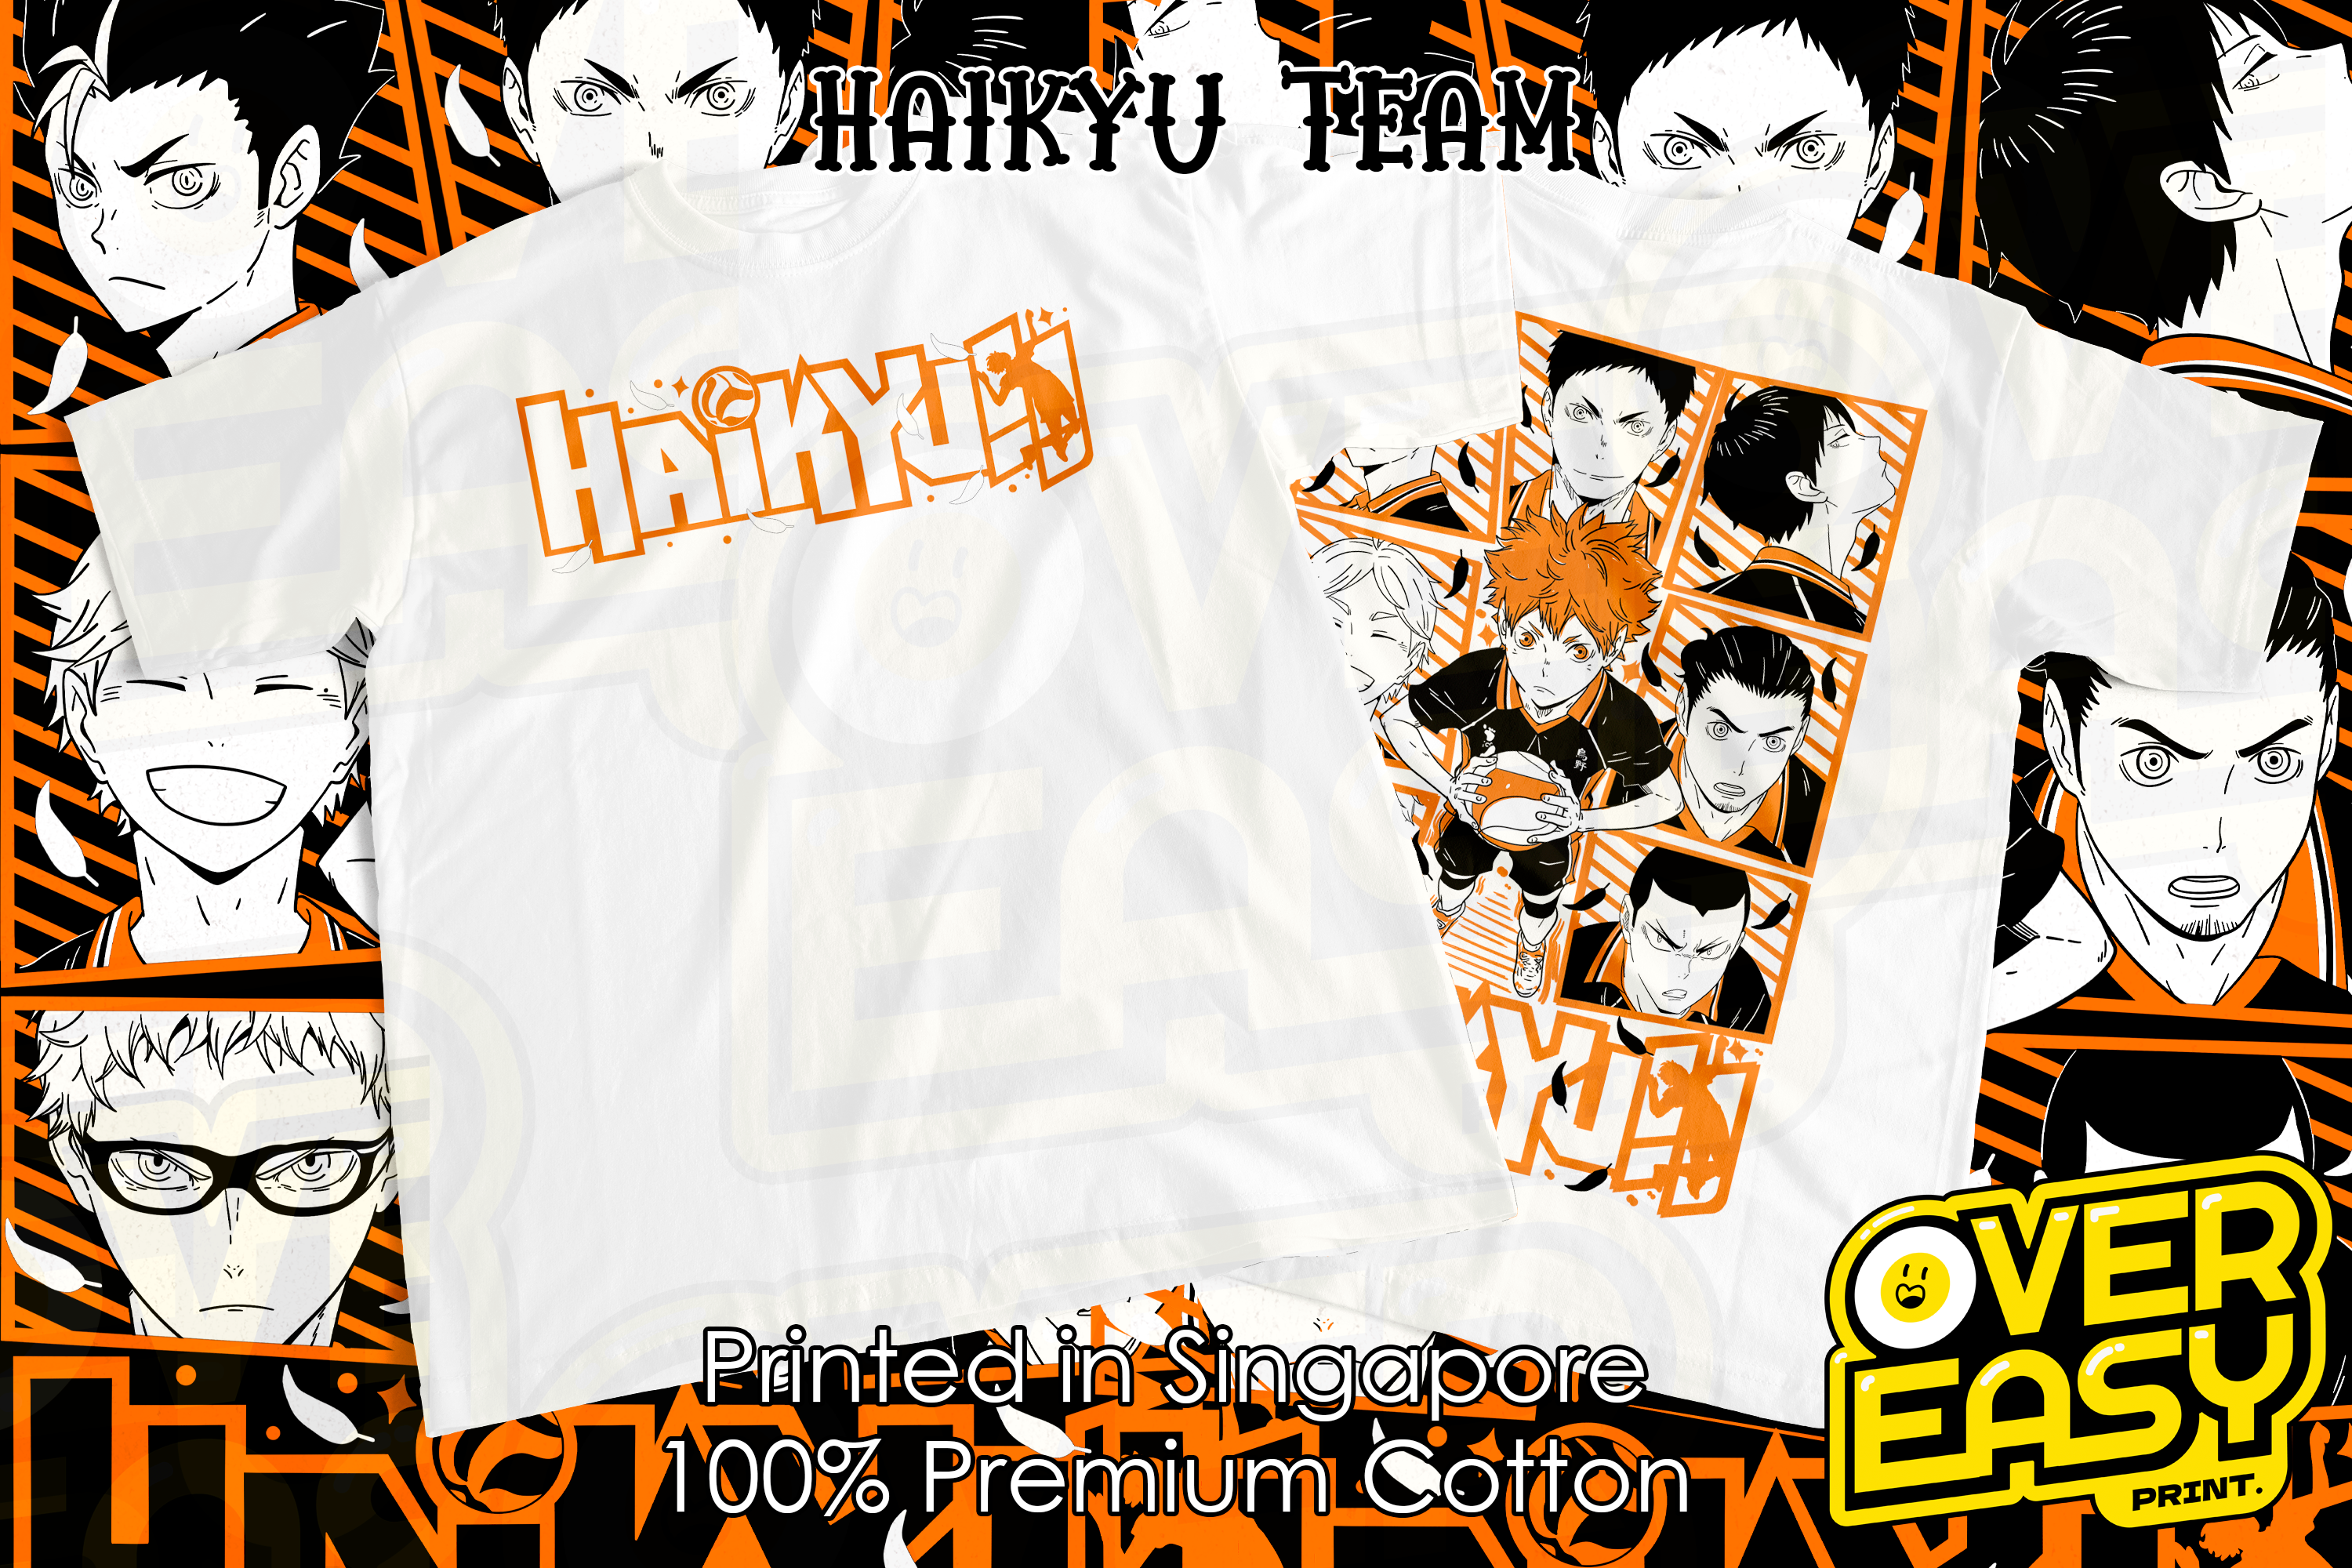 Haikyu Team Fanart Anime T-Shirt